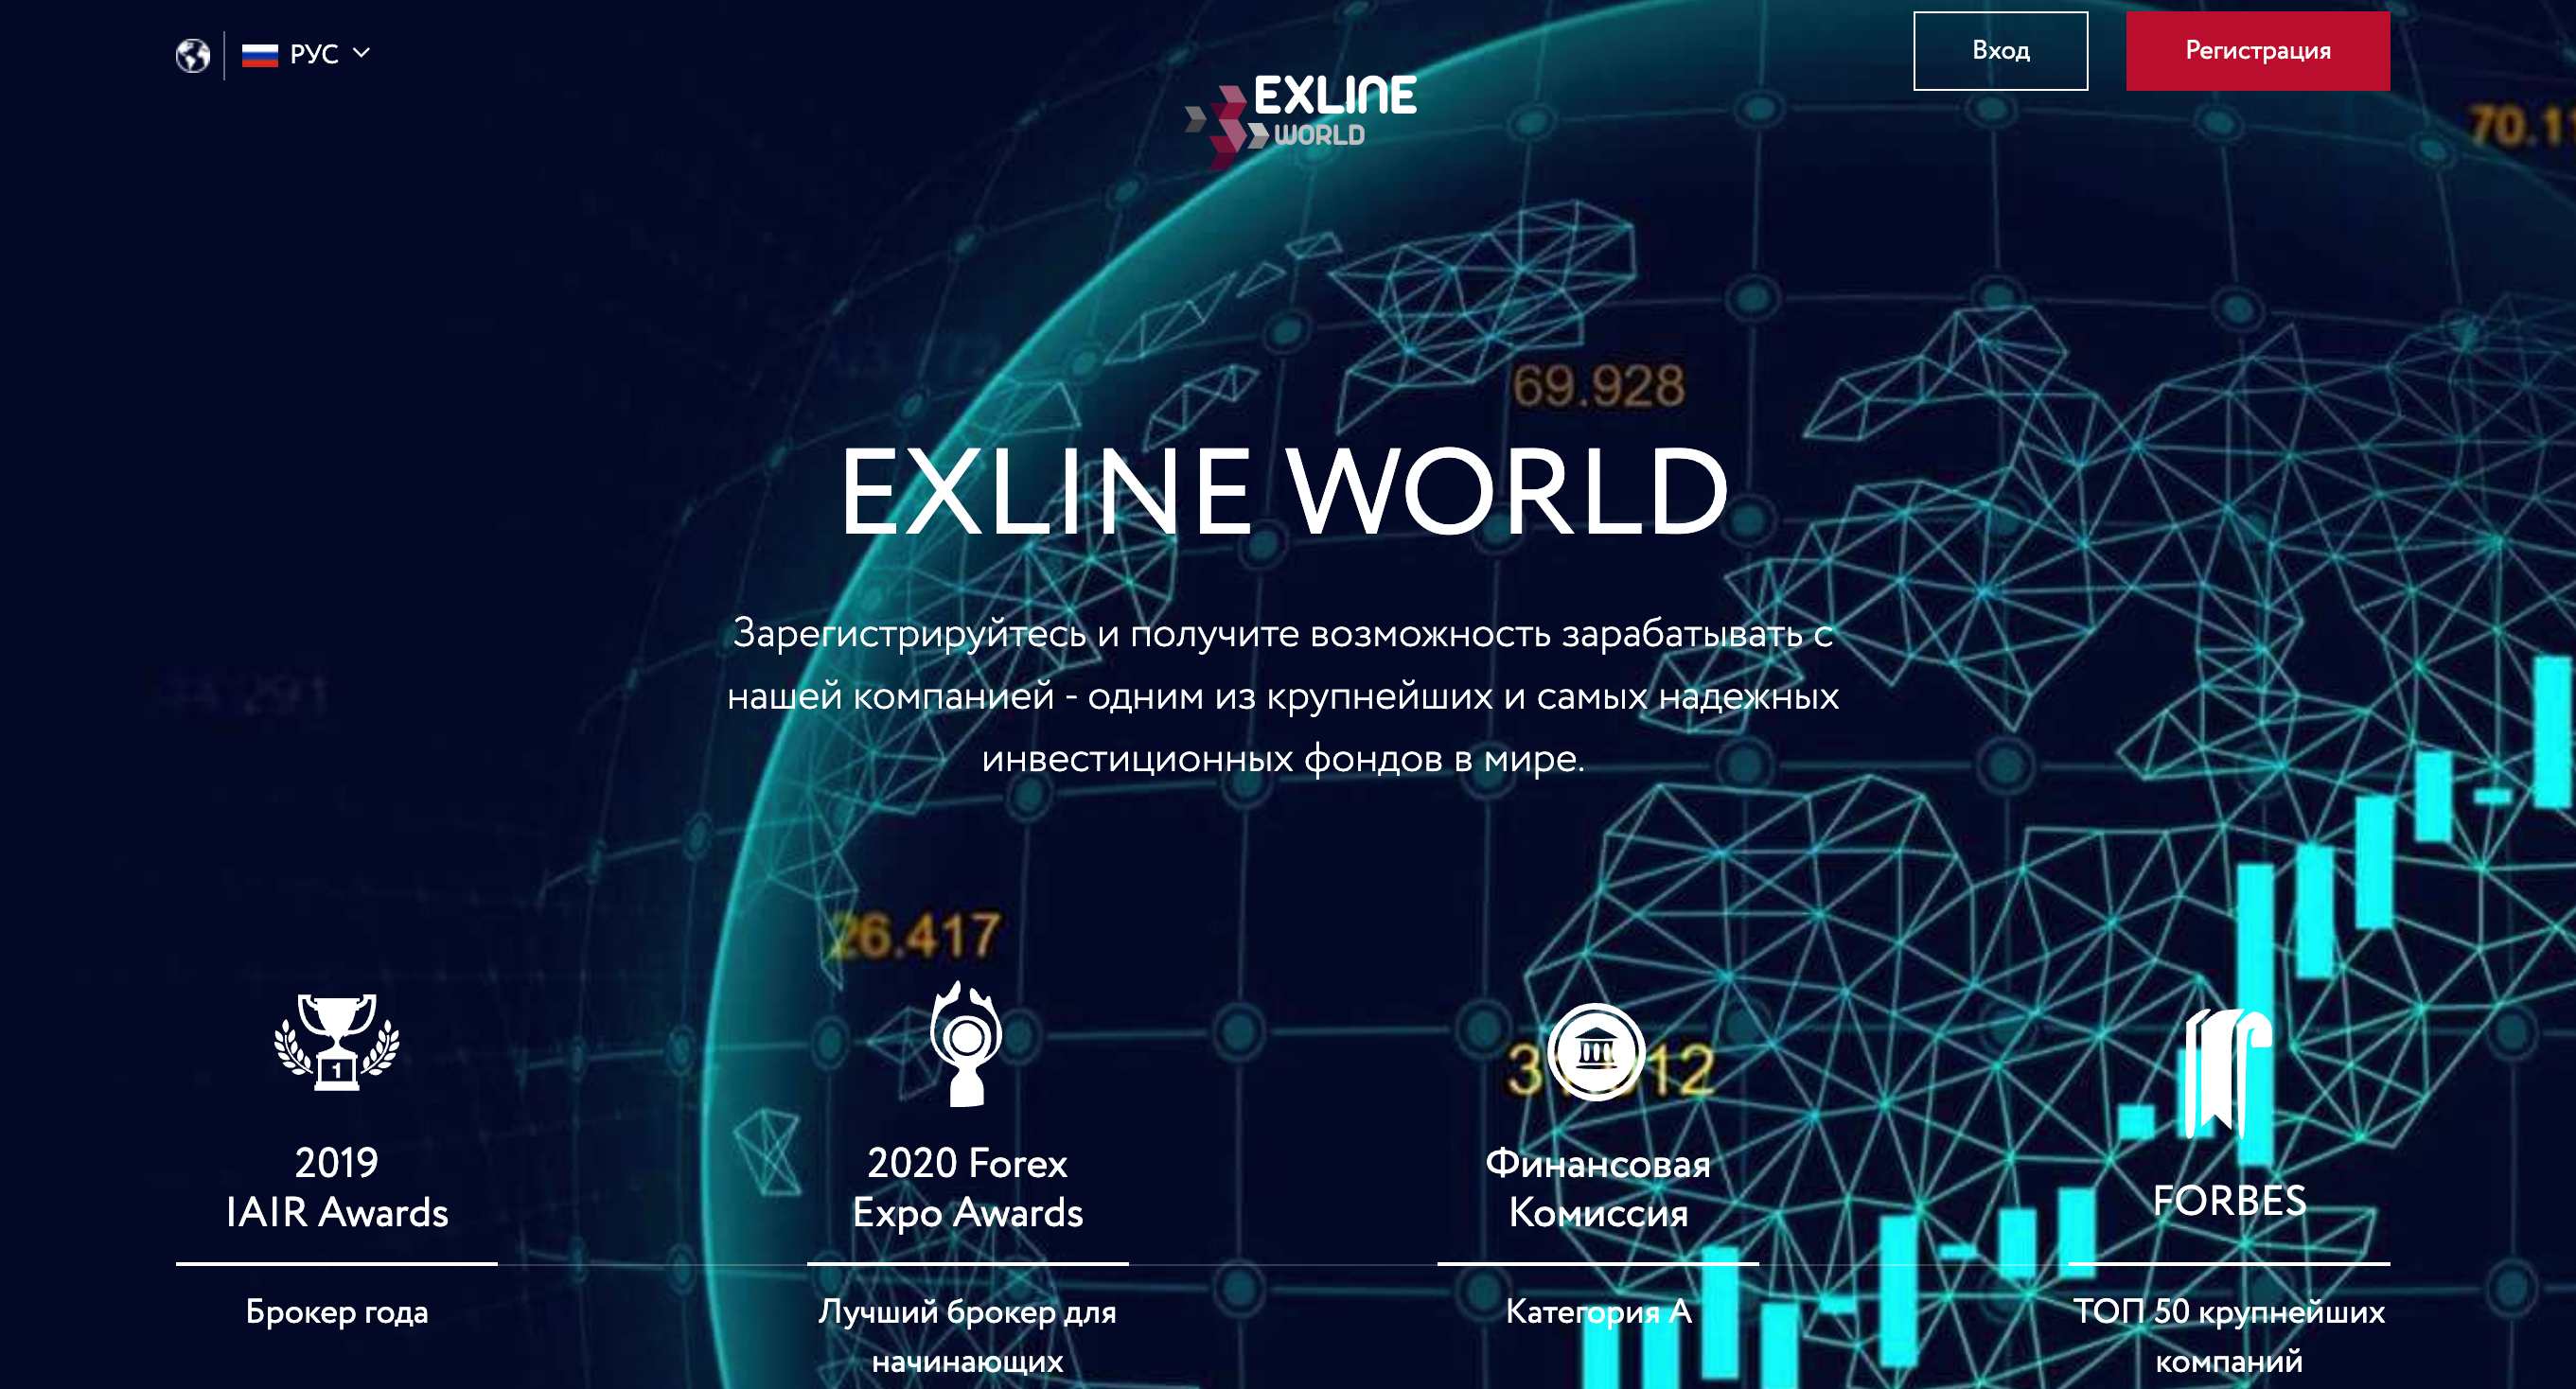 Exline World — клонированный брокер, предлагающий псевдоуслуги